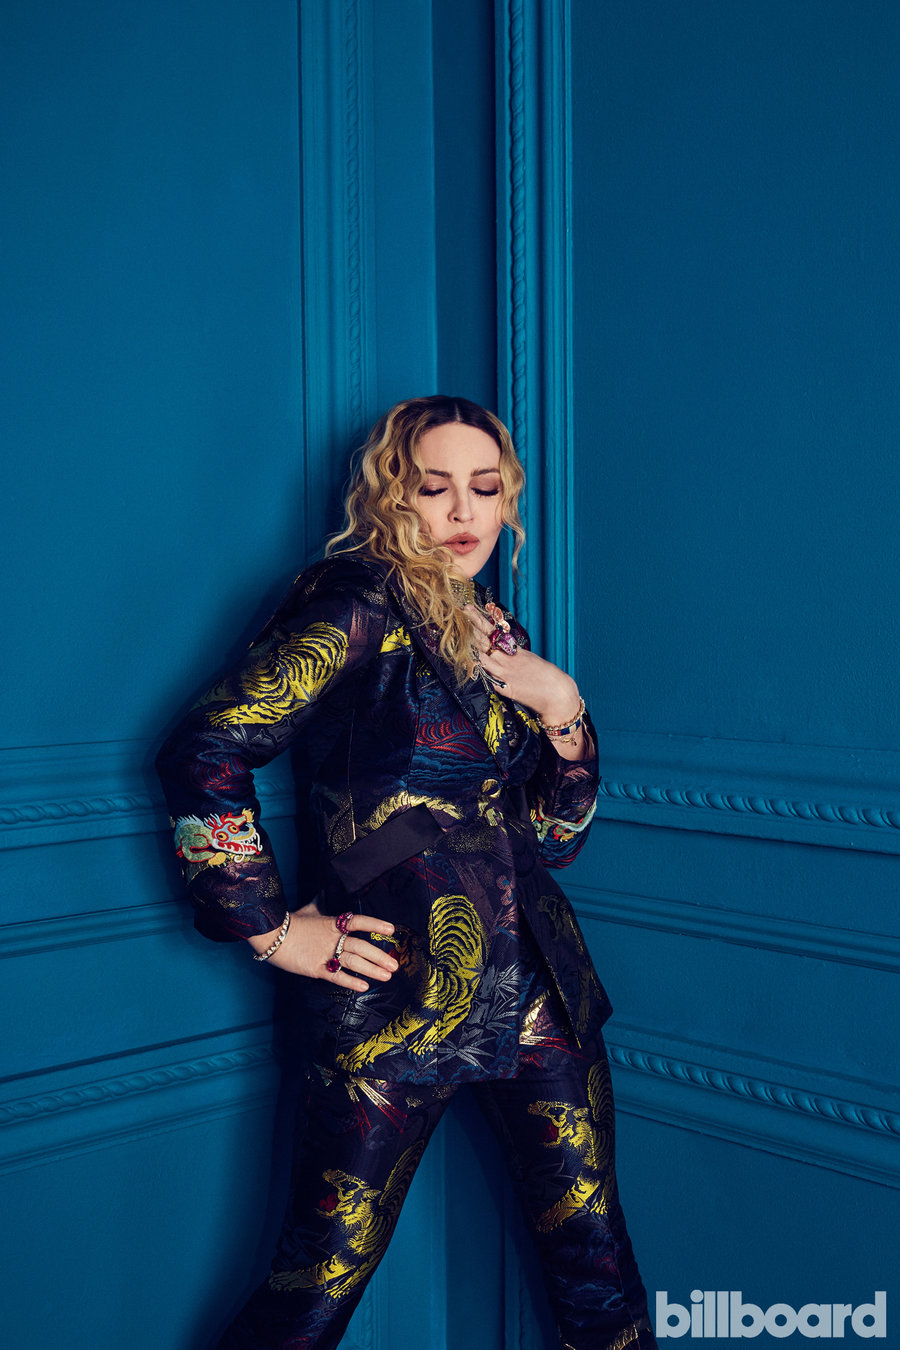 06-Madonna-wim-2016-women-in-music-billboard-1240.jpg